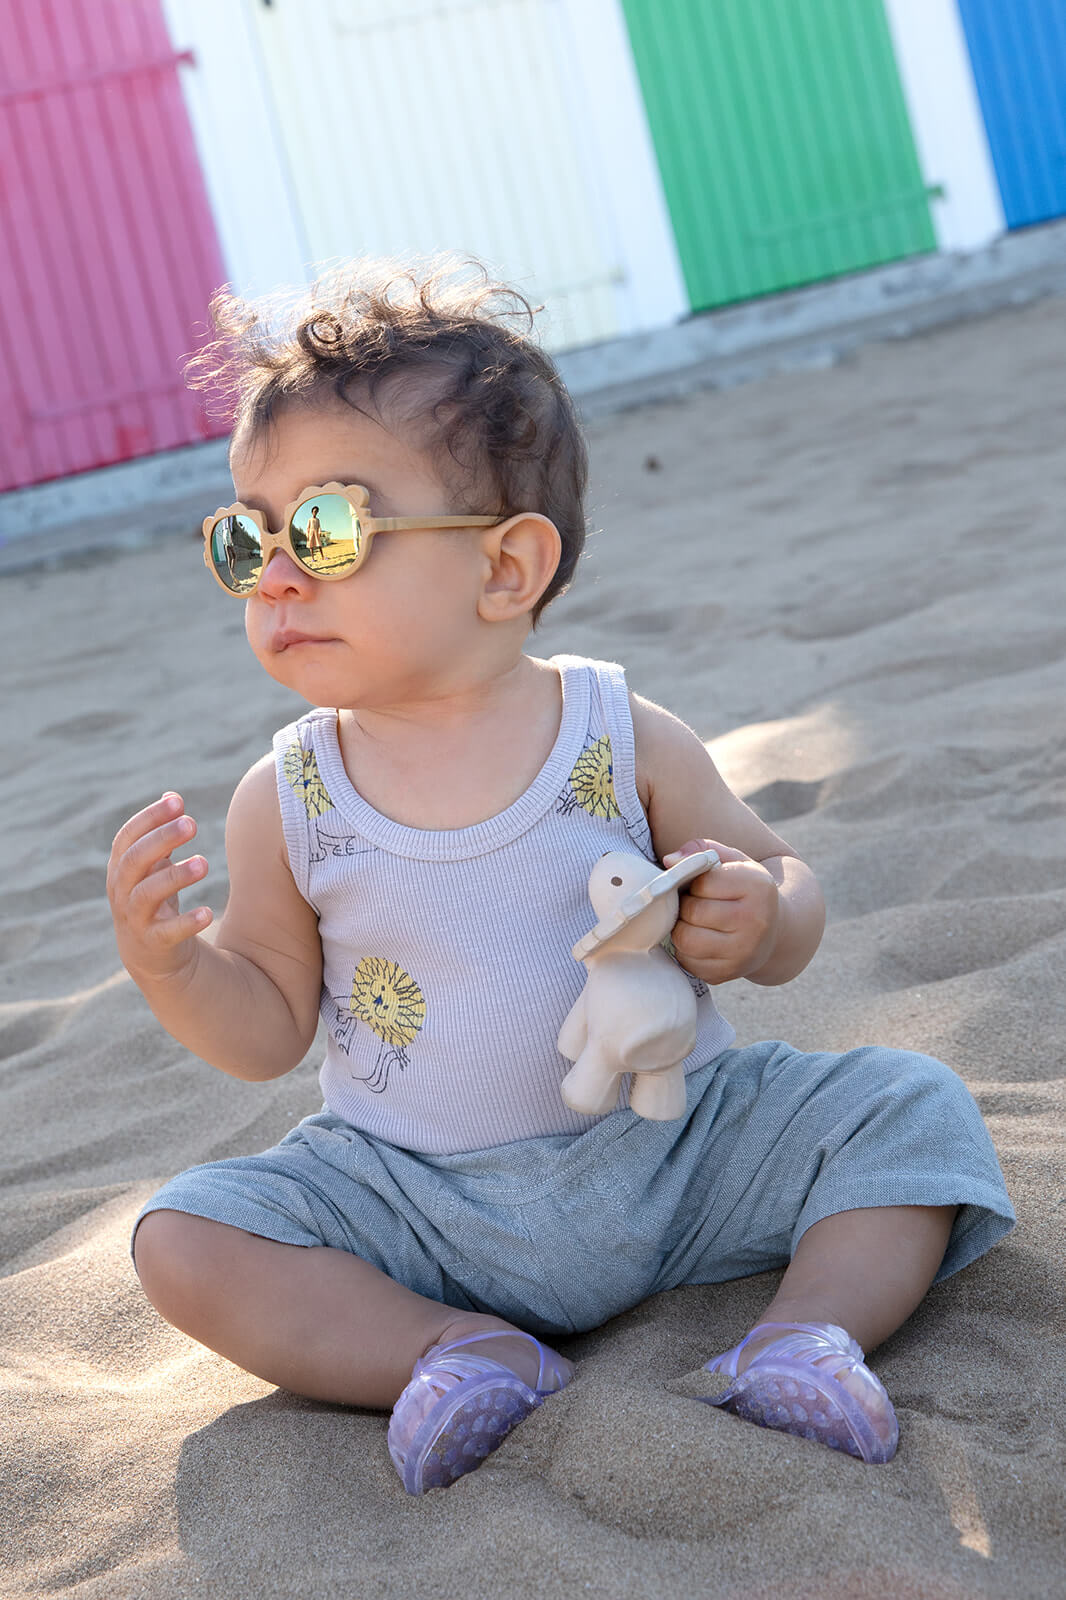 Bébé à la plage : conseils protéger sa peau et ses yeux